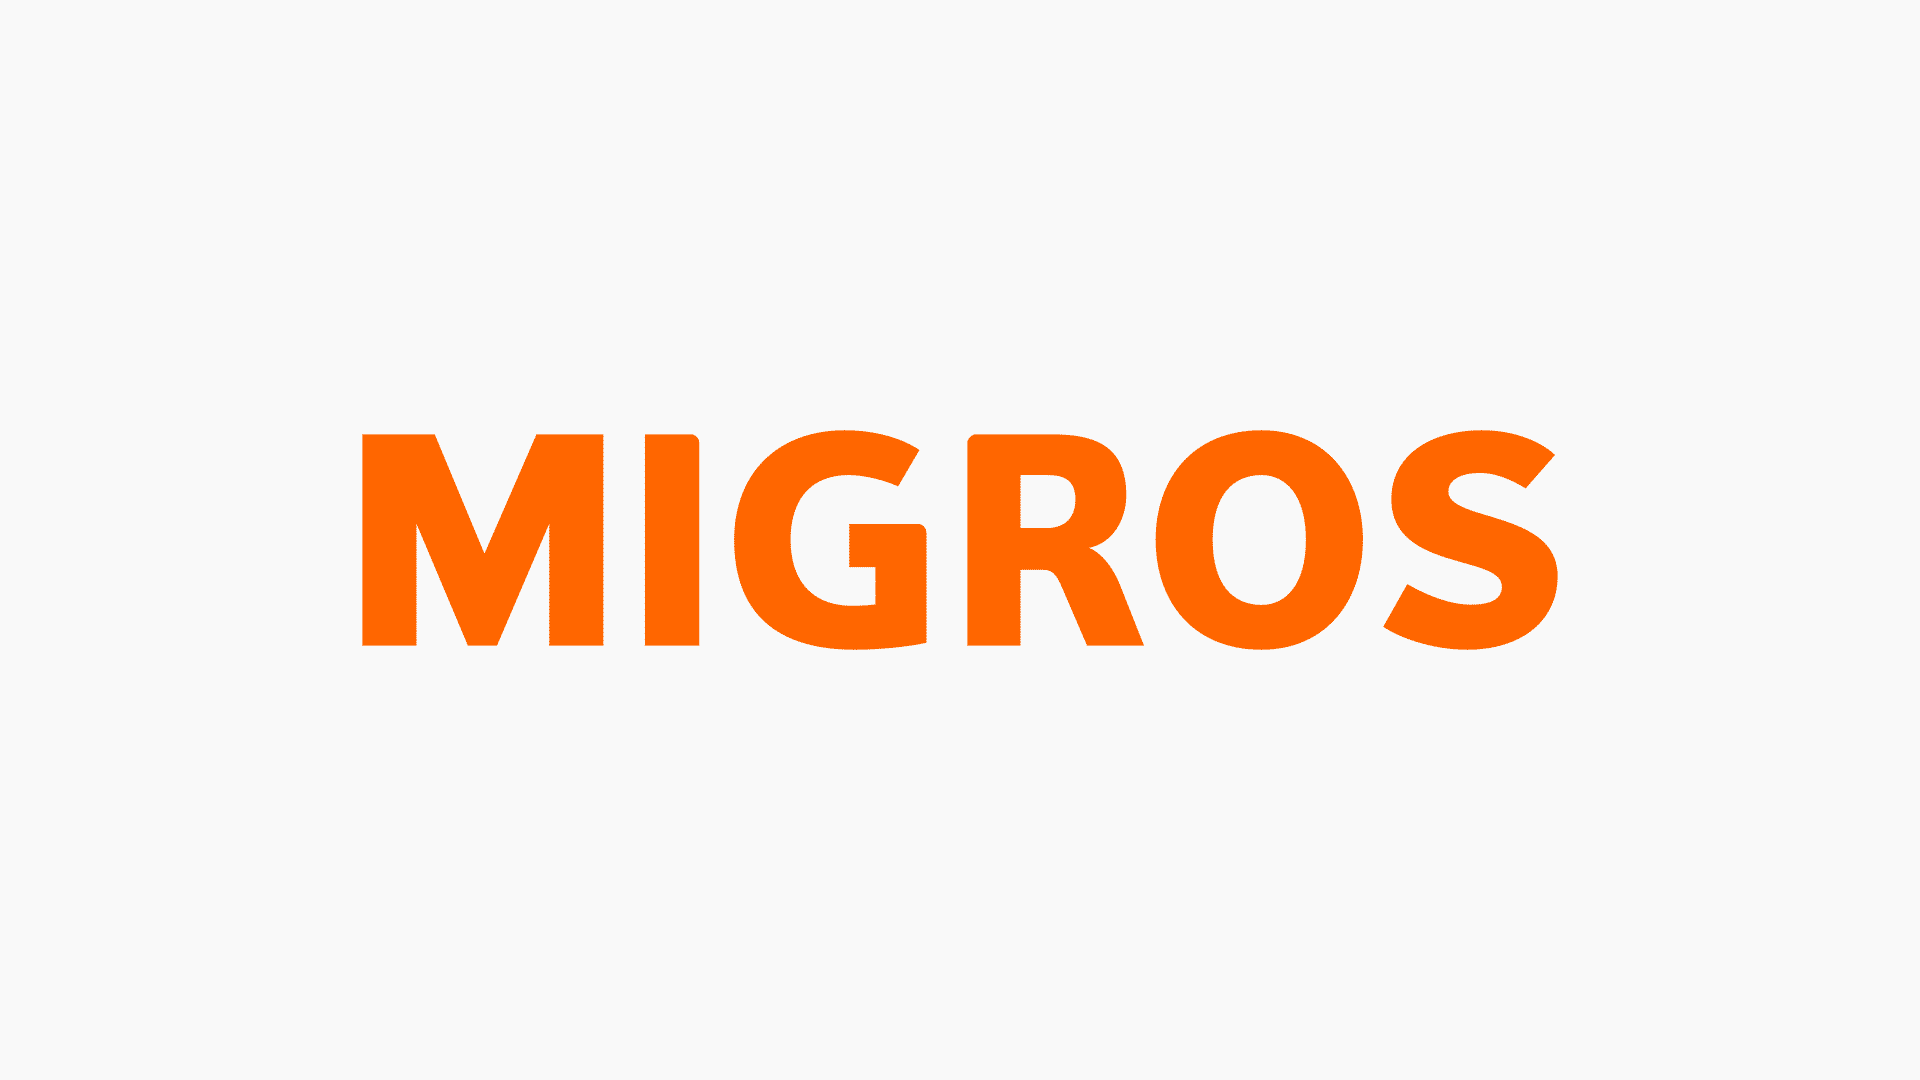 migros katalogu, mikroskop nasıl indirilir, migros online katalog indir, migros katalog download, mikroskop download